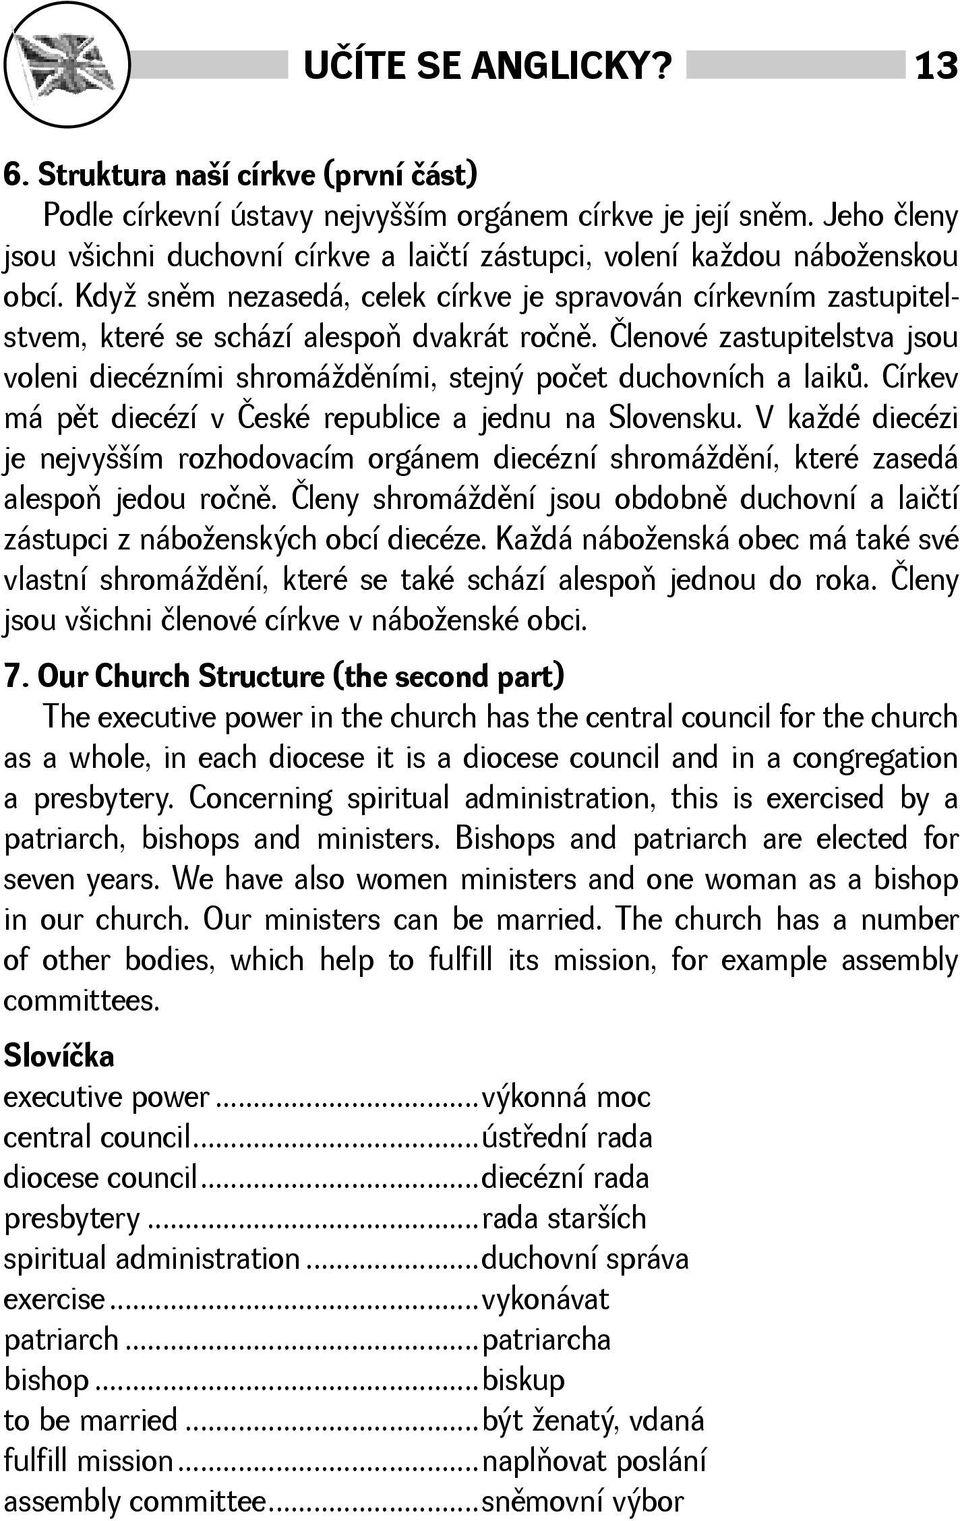 Členové zastupitelstva jsou voleni diecézními shromádìními, stejný počet duchovních a laikù. Církev má pìt diecézí v České republice a jednu na Slovensku.